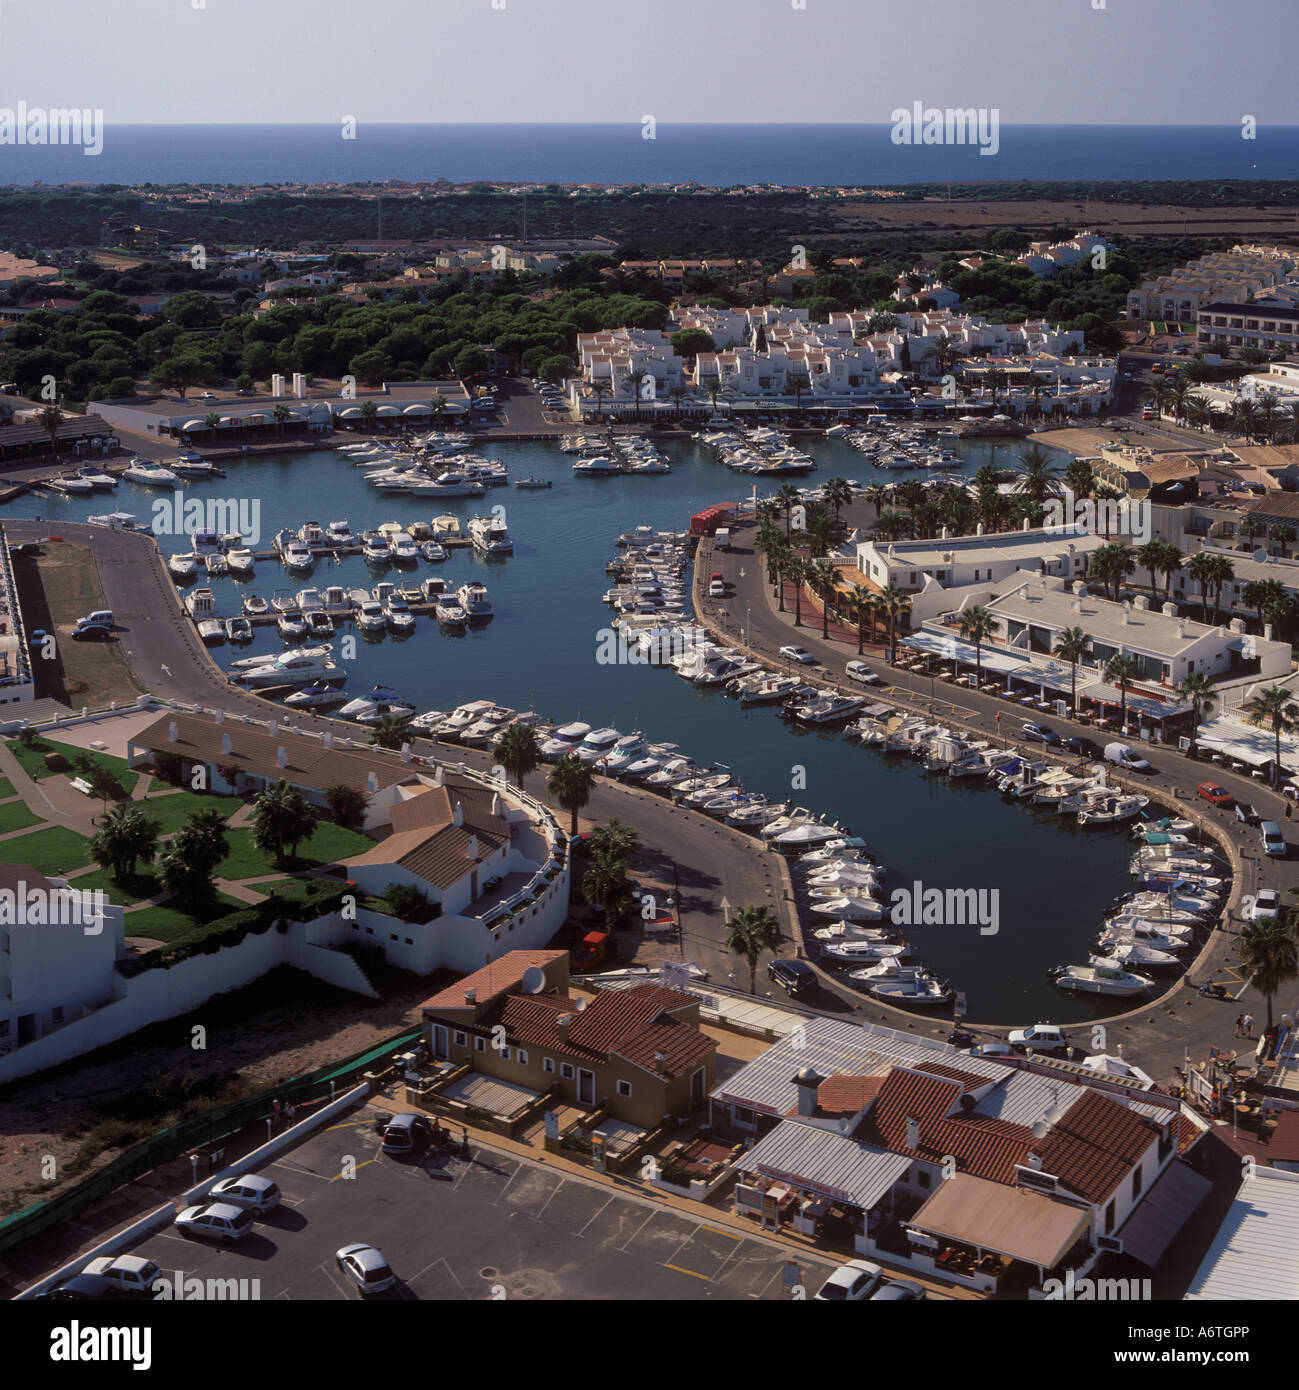 Vista aérea - Mirando hacia el oeste sobre el puerto deportivo y las instalaciones del complejo de Cala en Bosc ( Cala en Bosch ), costa sur oeste Menorc Foto de stock